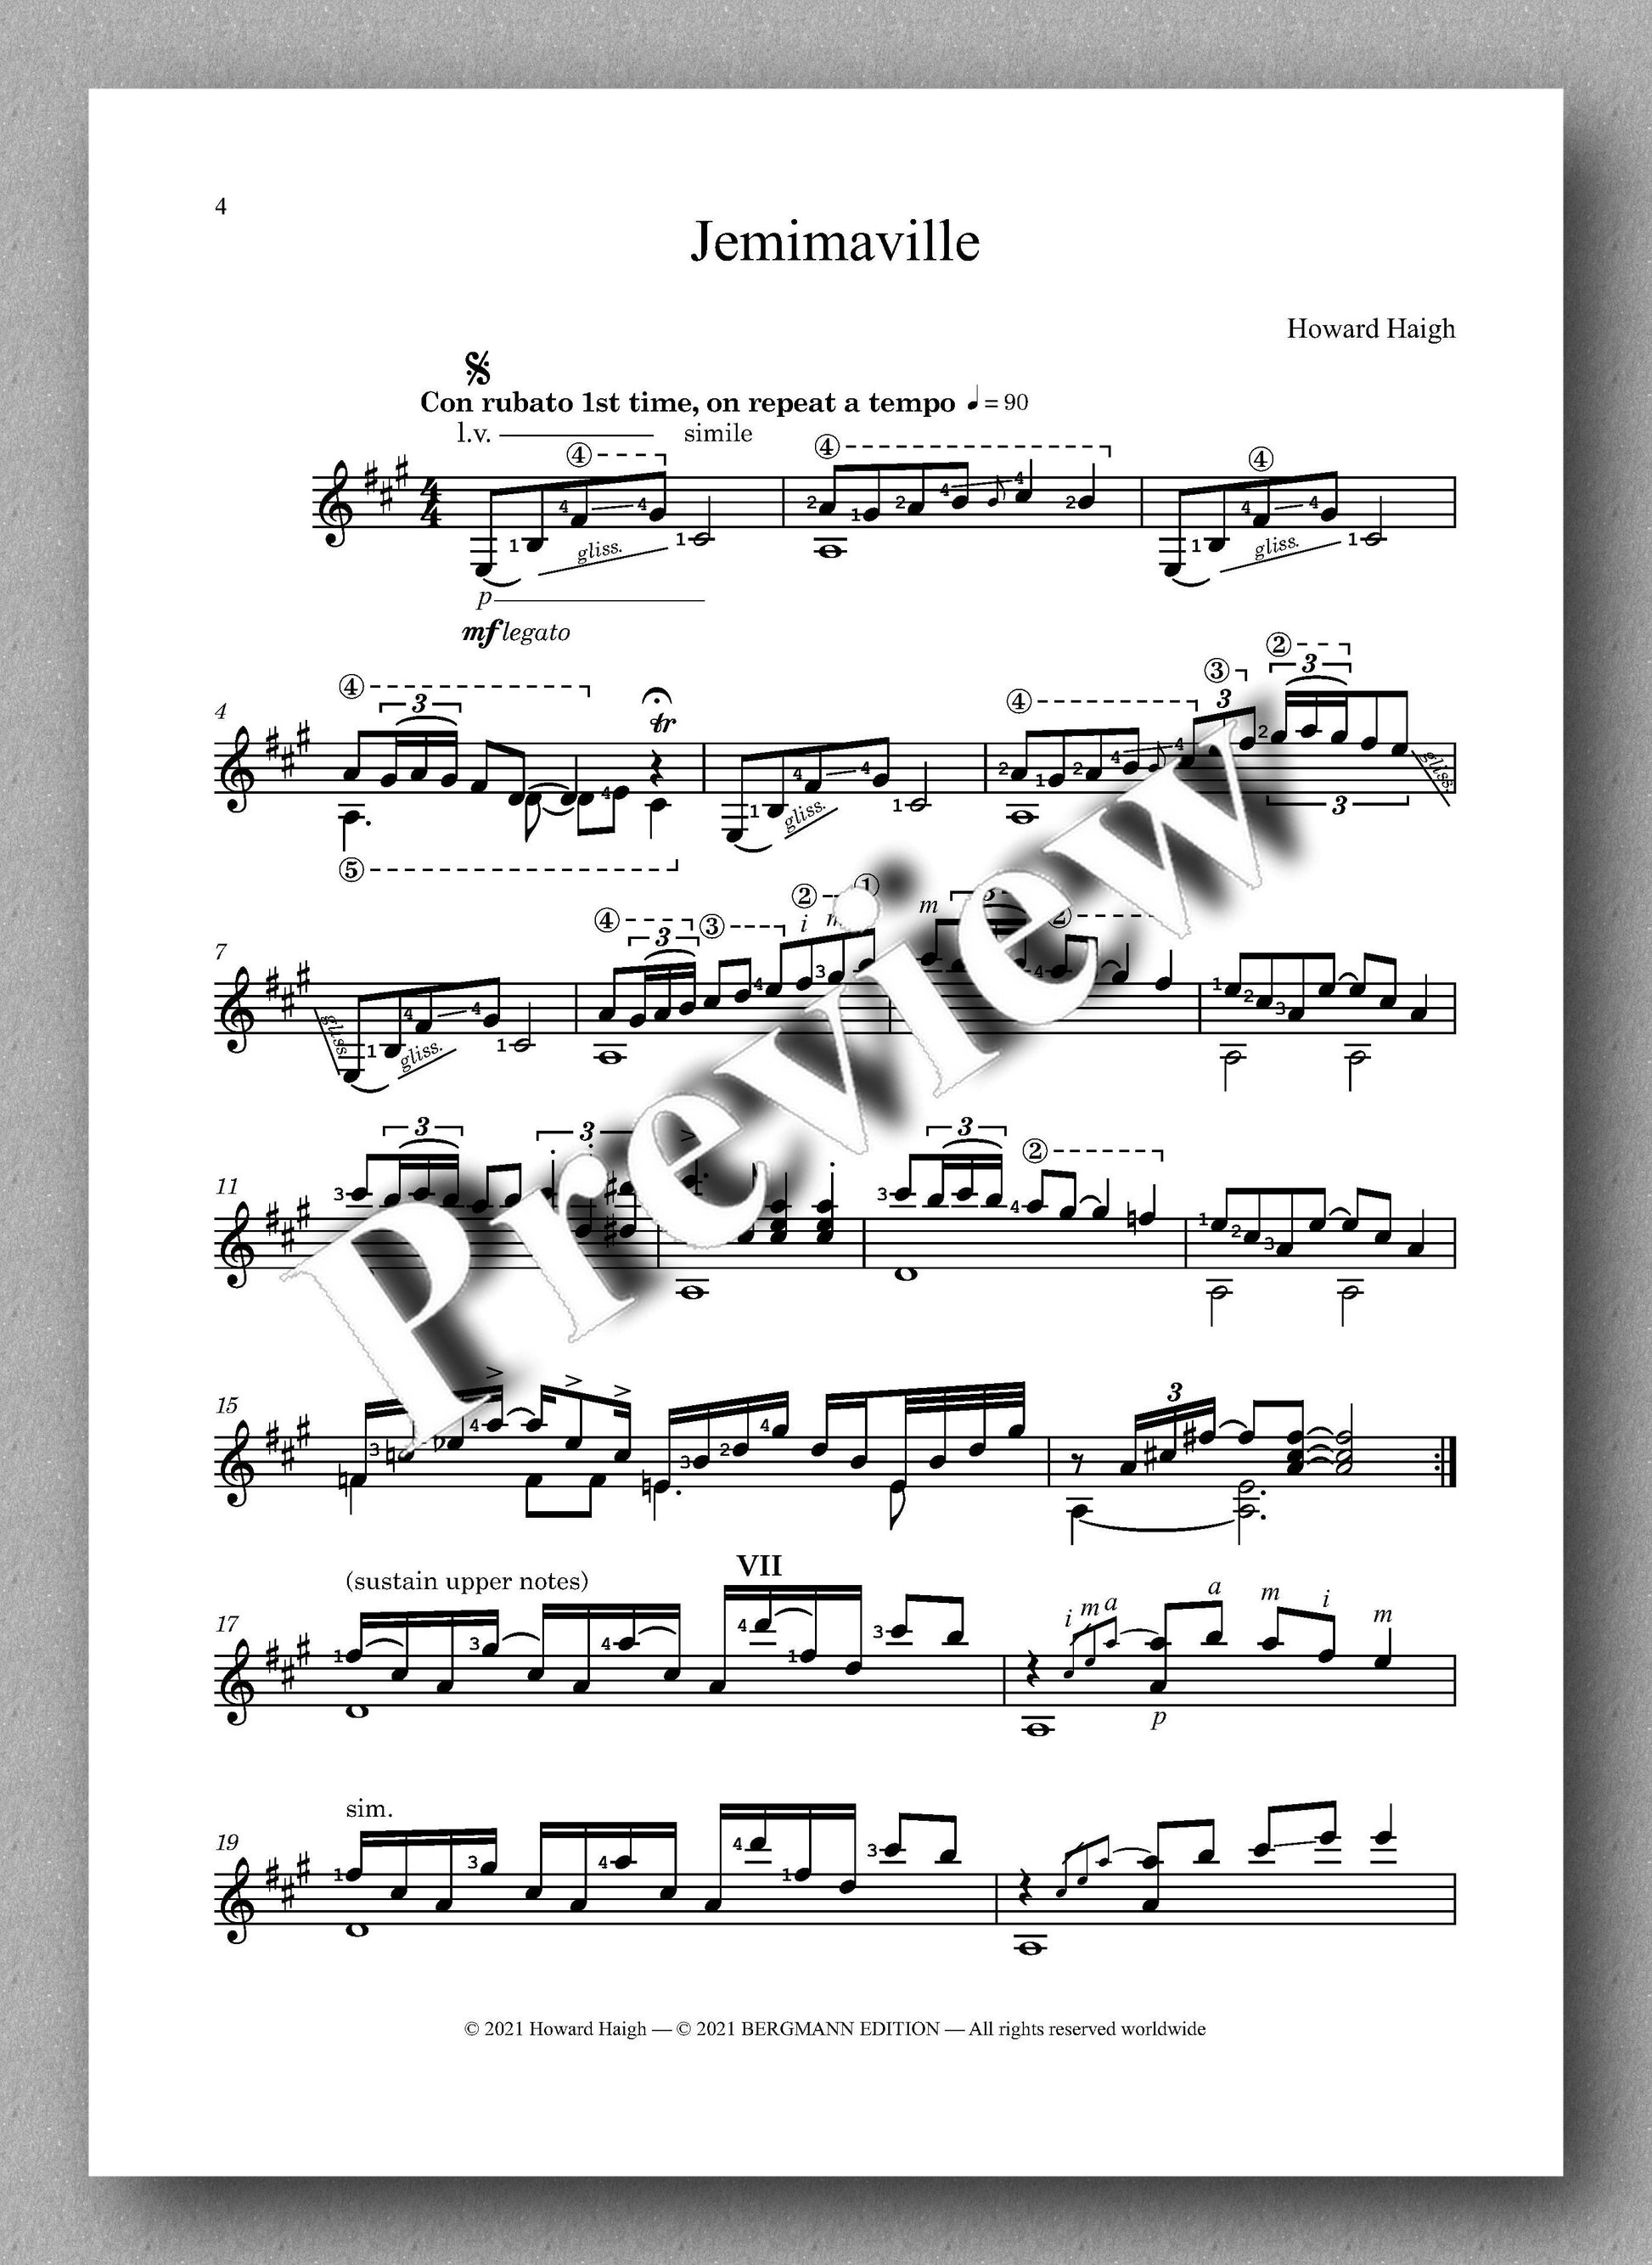 Jemimaville by Howard Haigh - music score 1